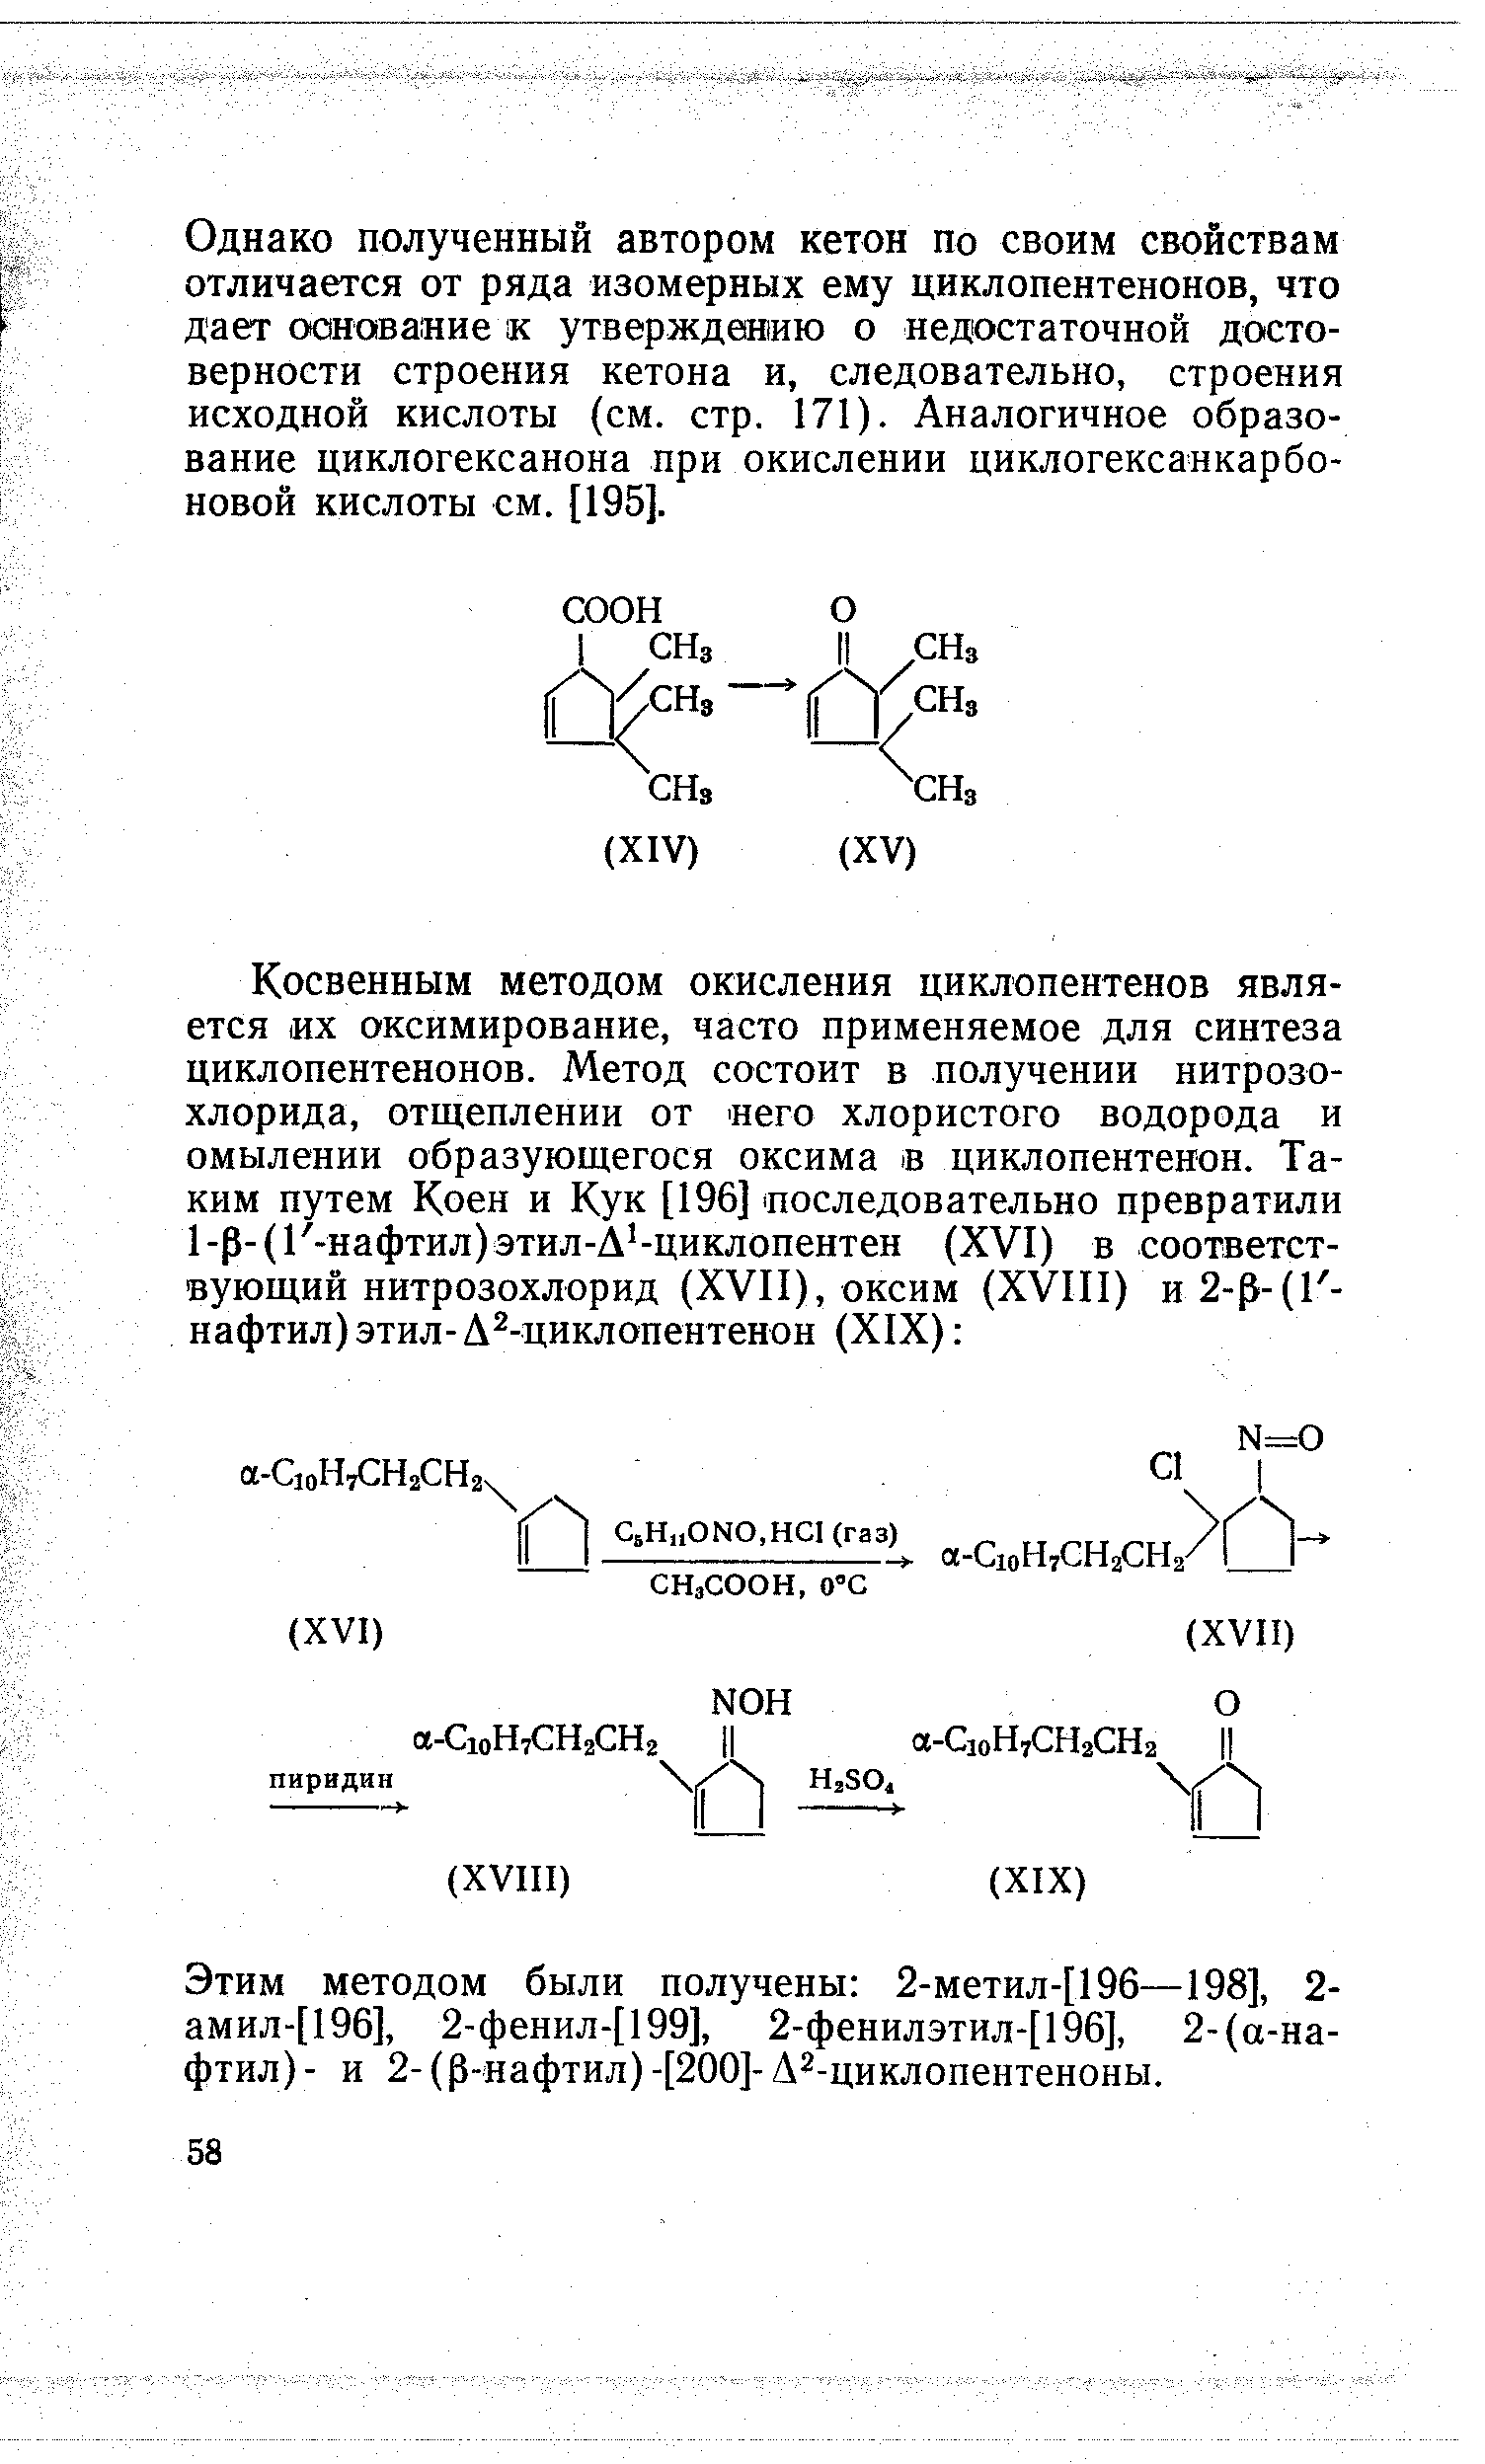 Этим методом были получены 2-метил-[196—198], 2-амил-[196], 2-фенил-[199], 2-фенилэтил-[196], 2-(а-на-фтил) - и 2- (р-нафтил) -[200]- Л .циклопентеноны.